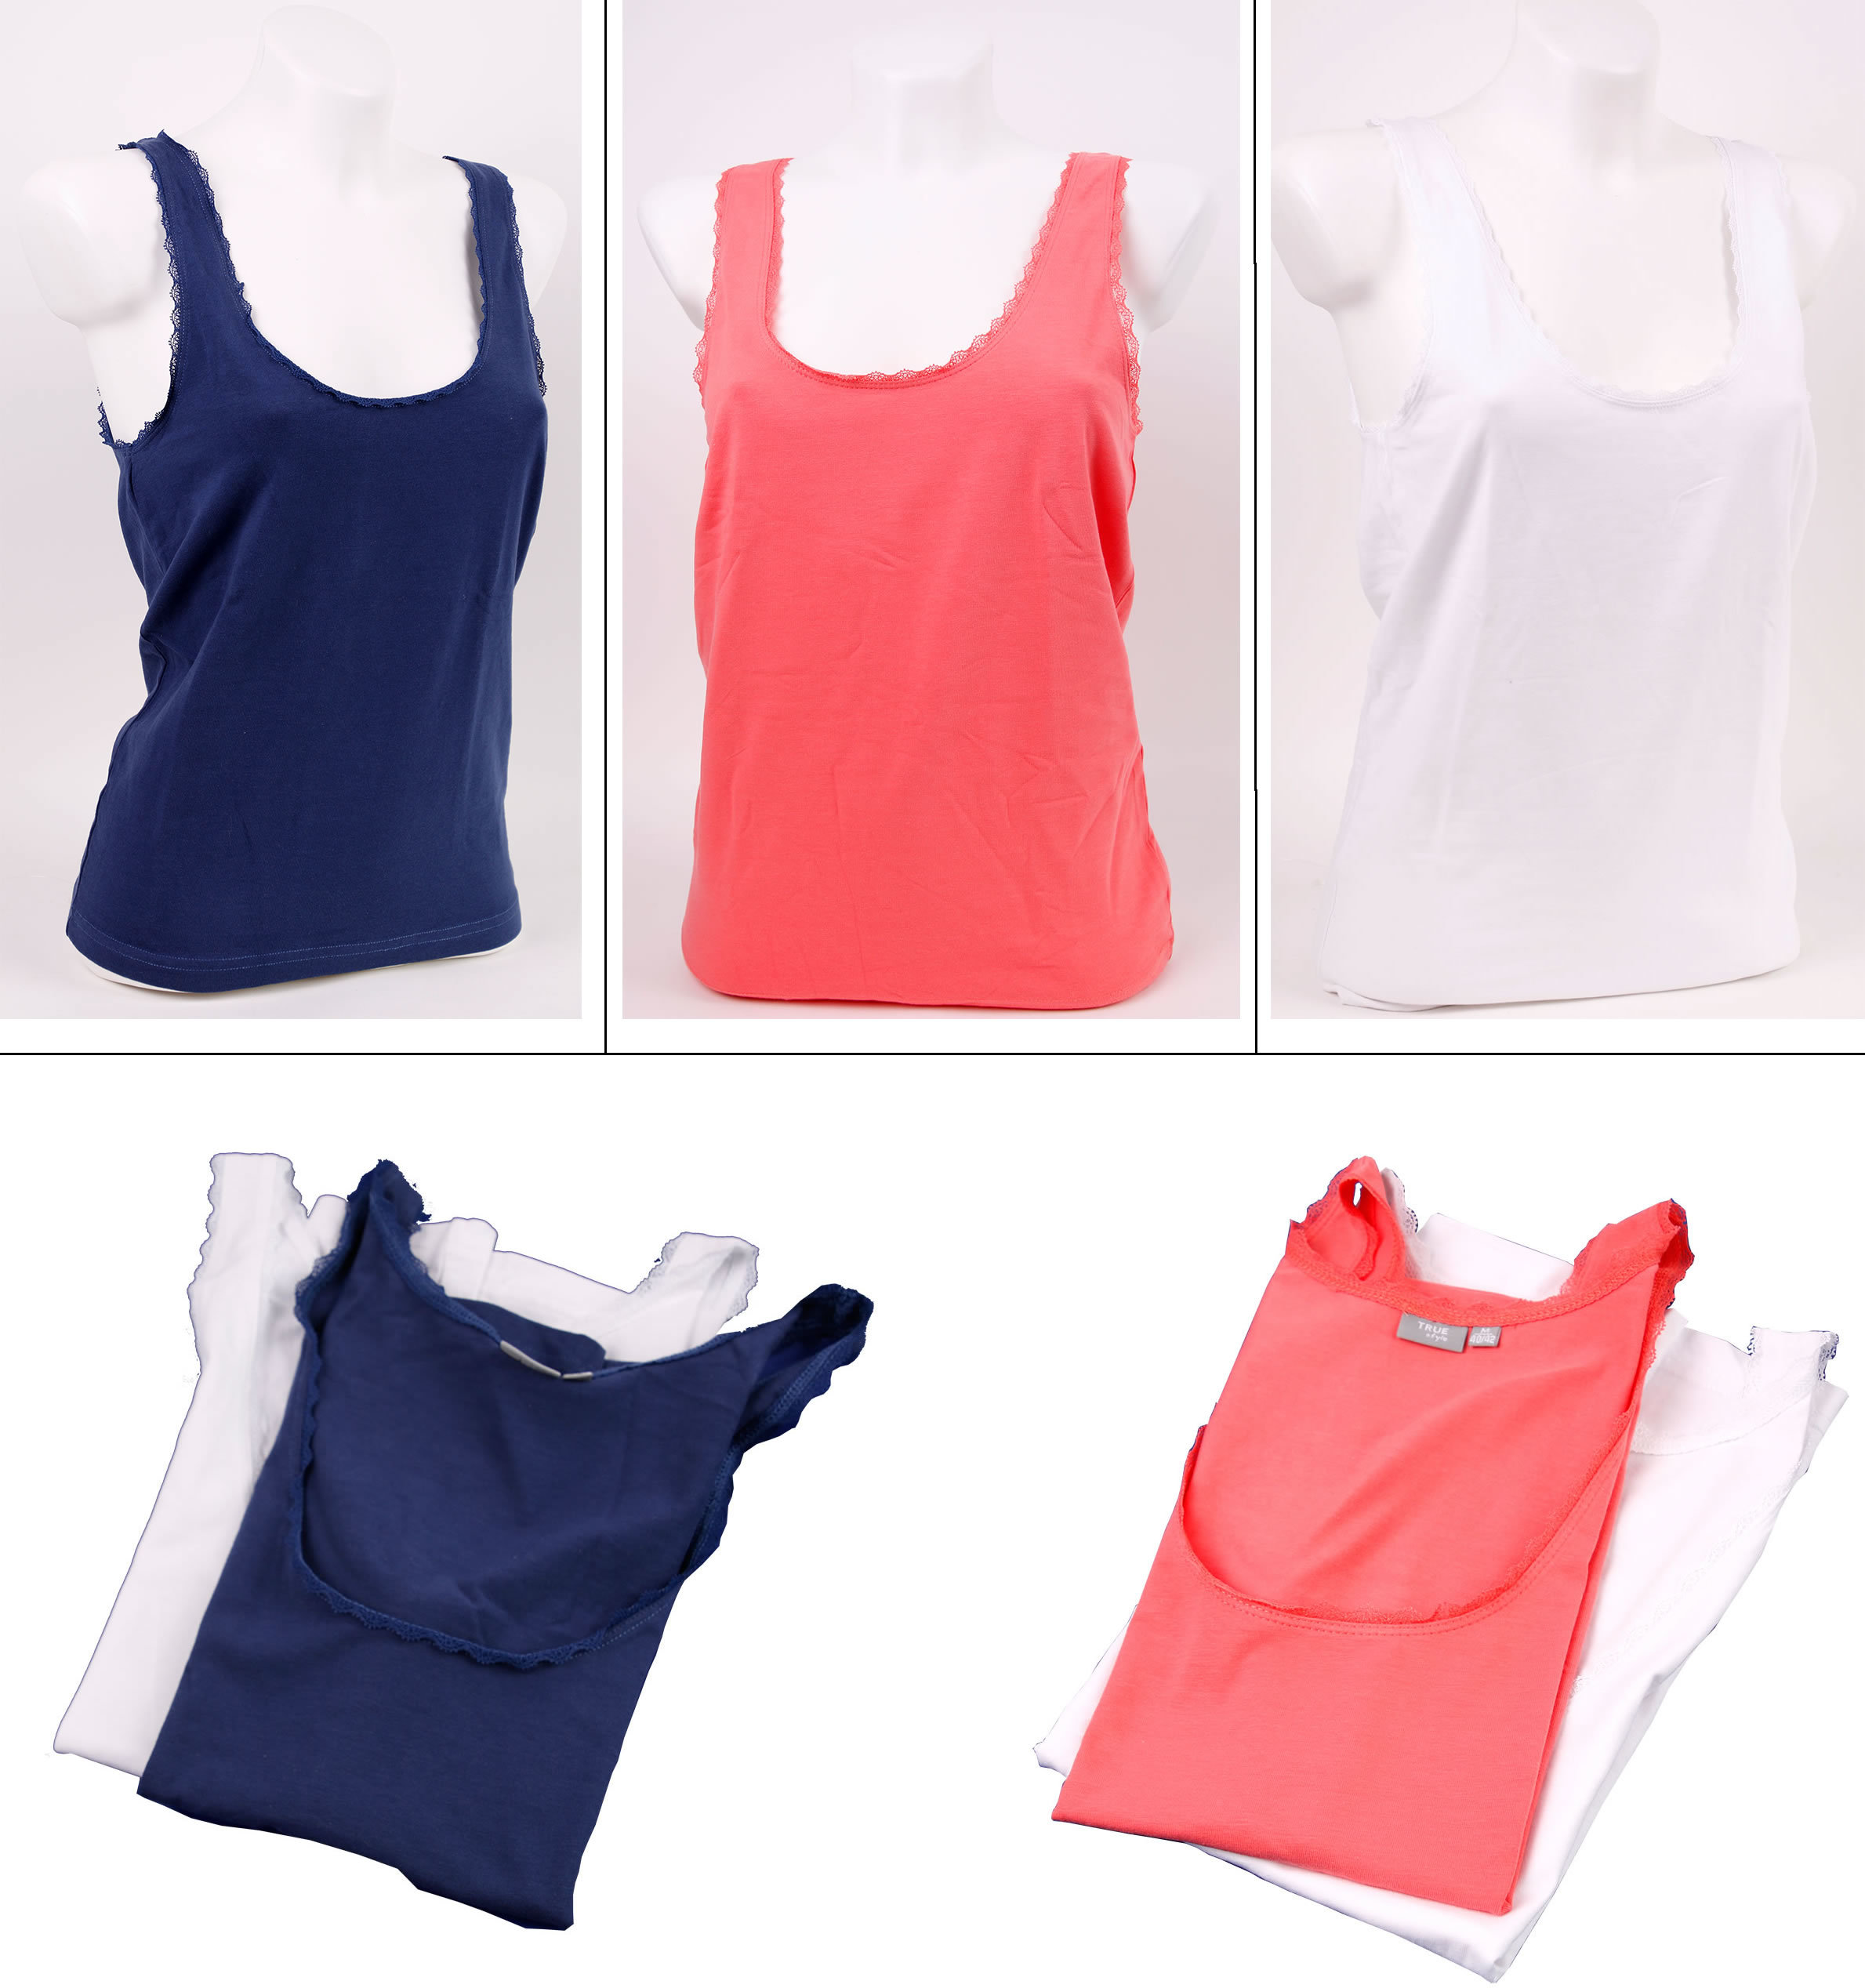 Damen Unterhemd 2er Pack in verschiedenen Farben